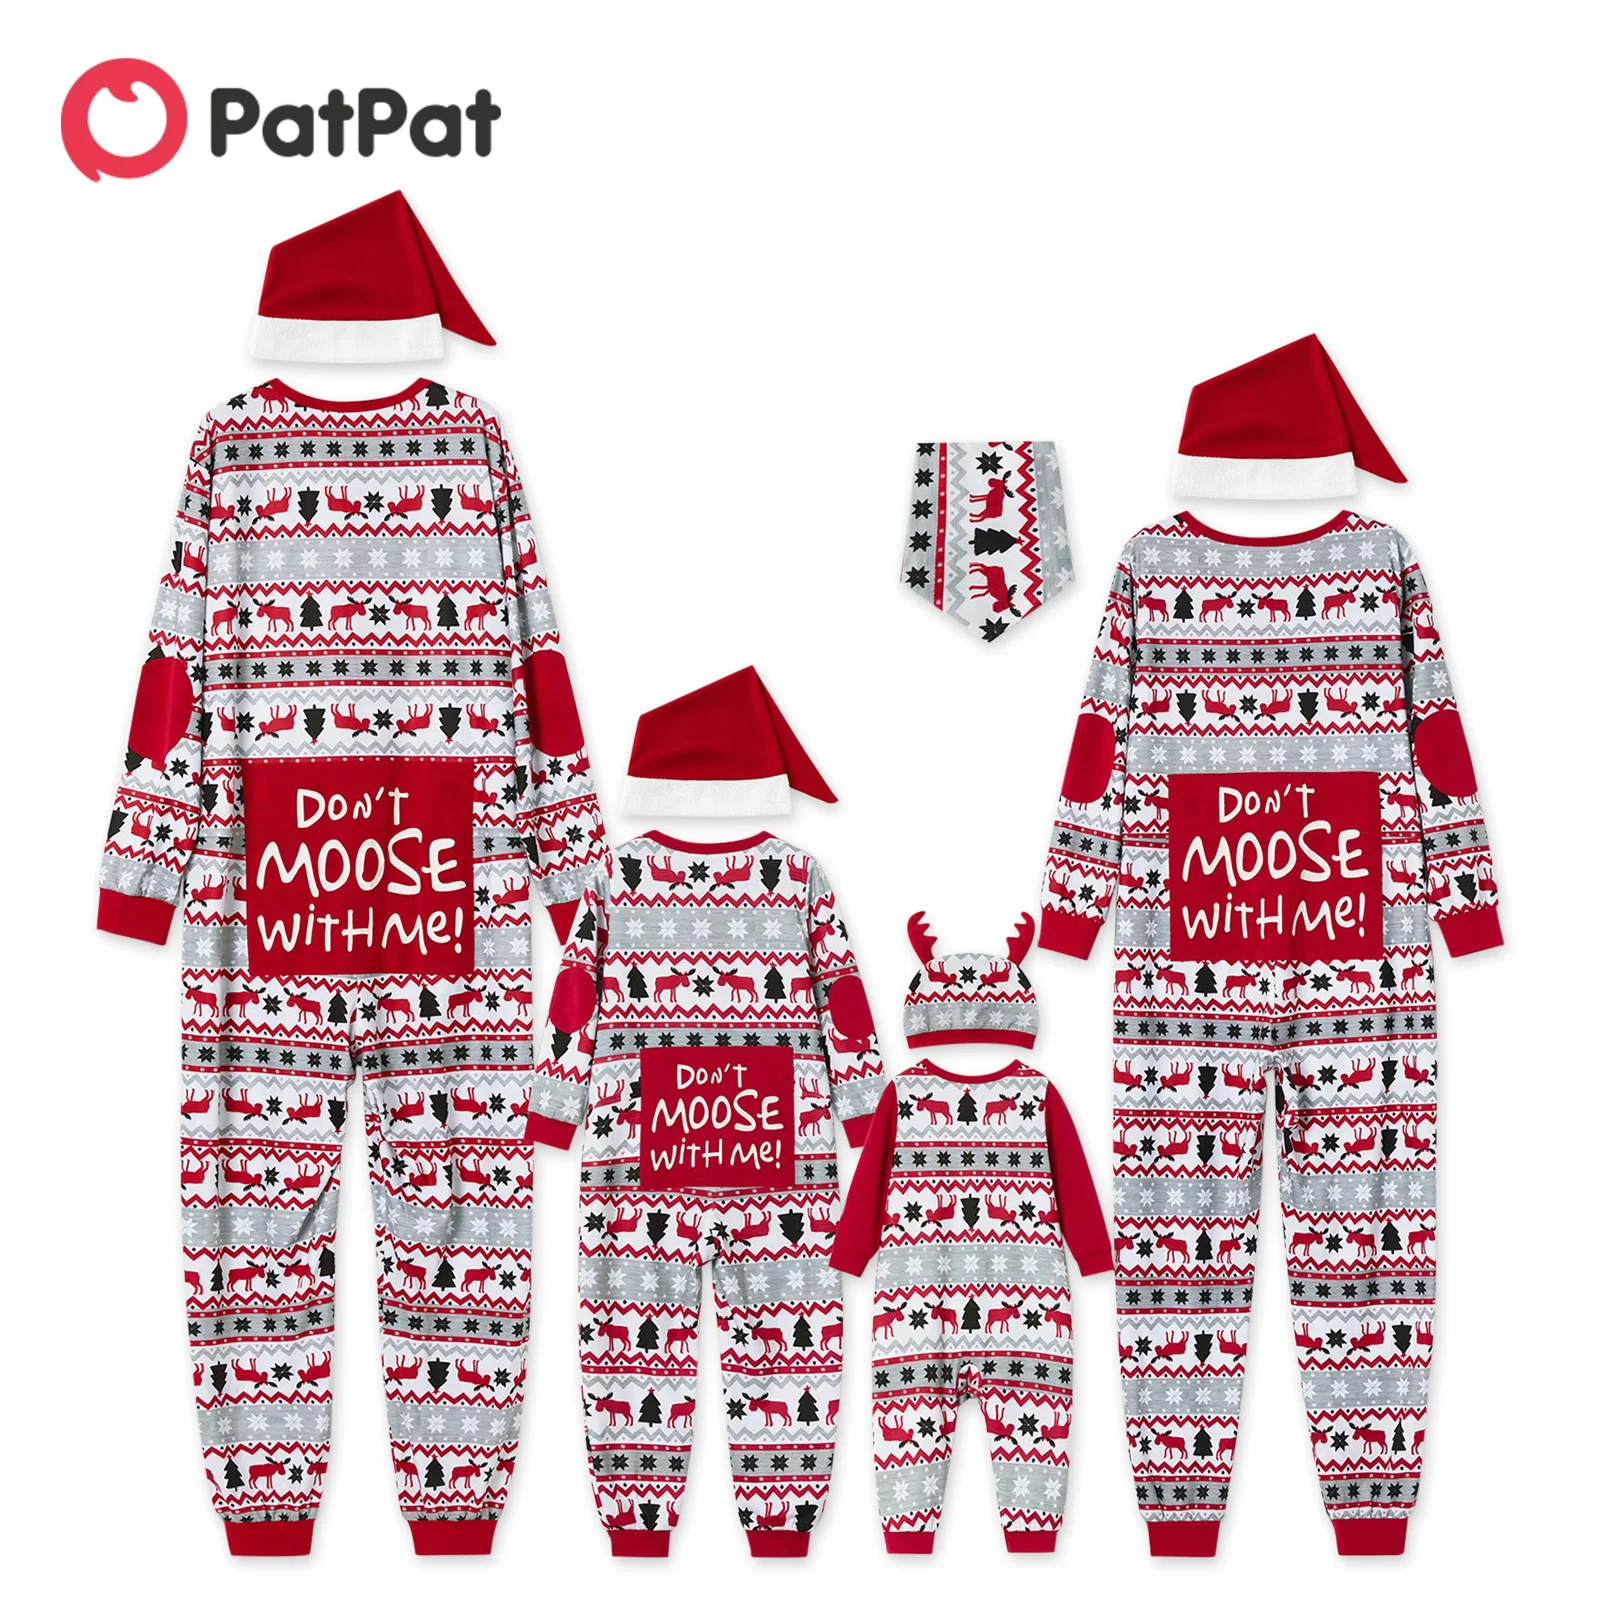 PatPat Mosaic не лосят со мной семейные сочетающиеся рождественские пижамы